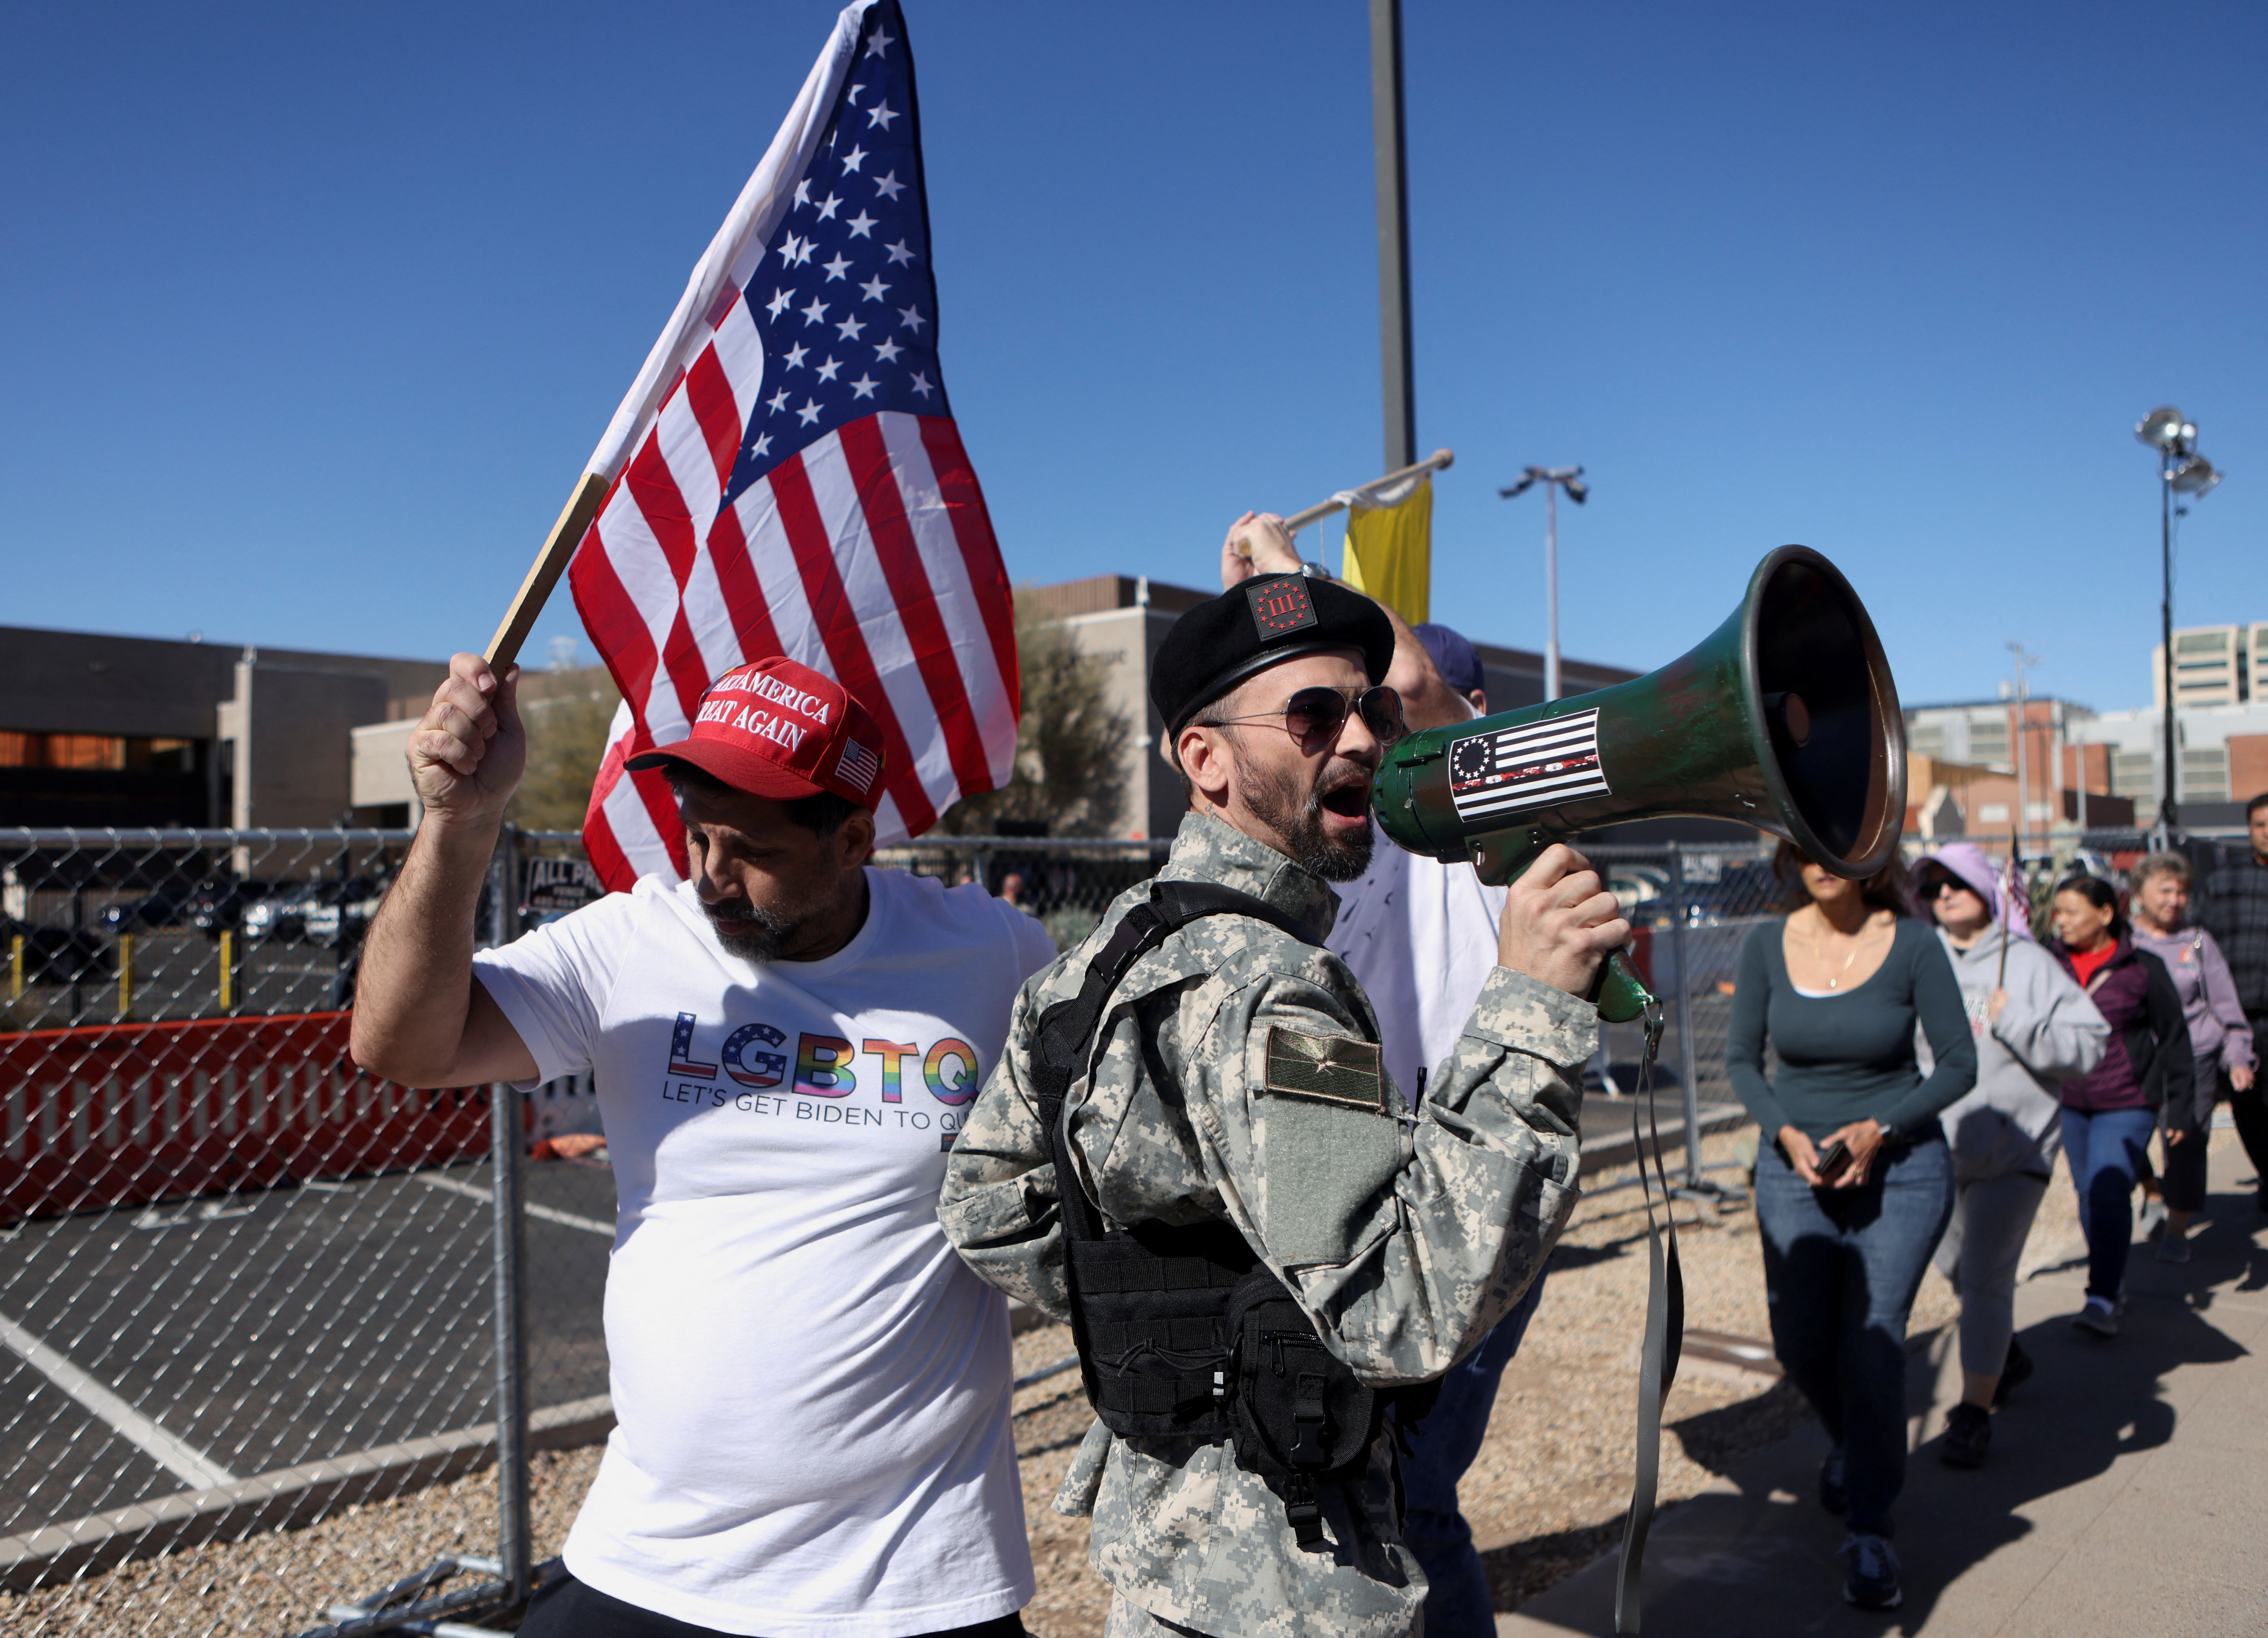 Alrededor de 50 manifestantes conservadores se reunieron a las afueras del centro de conteo electoral del condado Maricopa, en el centro de Phoenix, el sábado al mediodía para manifestar sus preocupaciones sobre la lentitud del conteo de votos. (REUTERS)